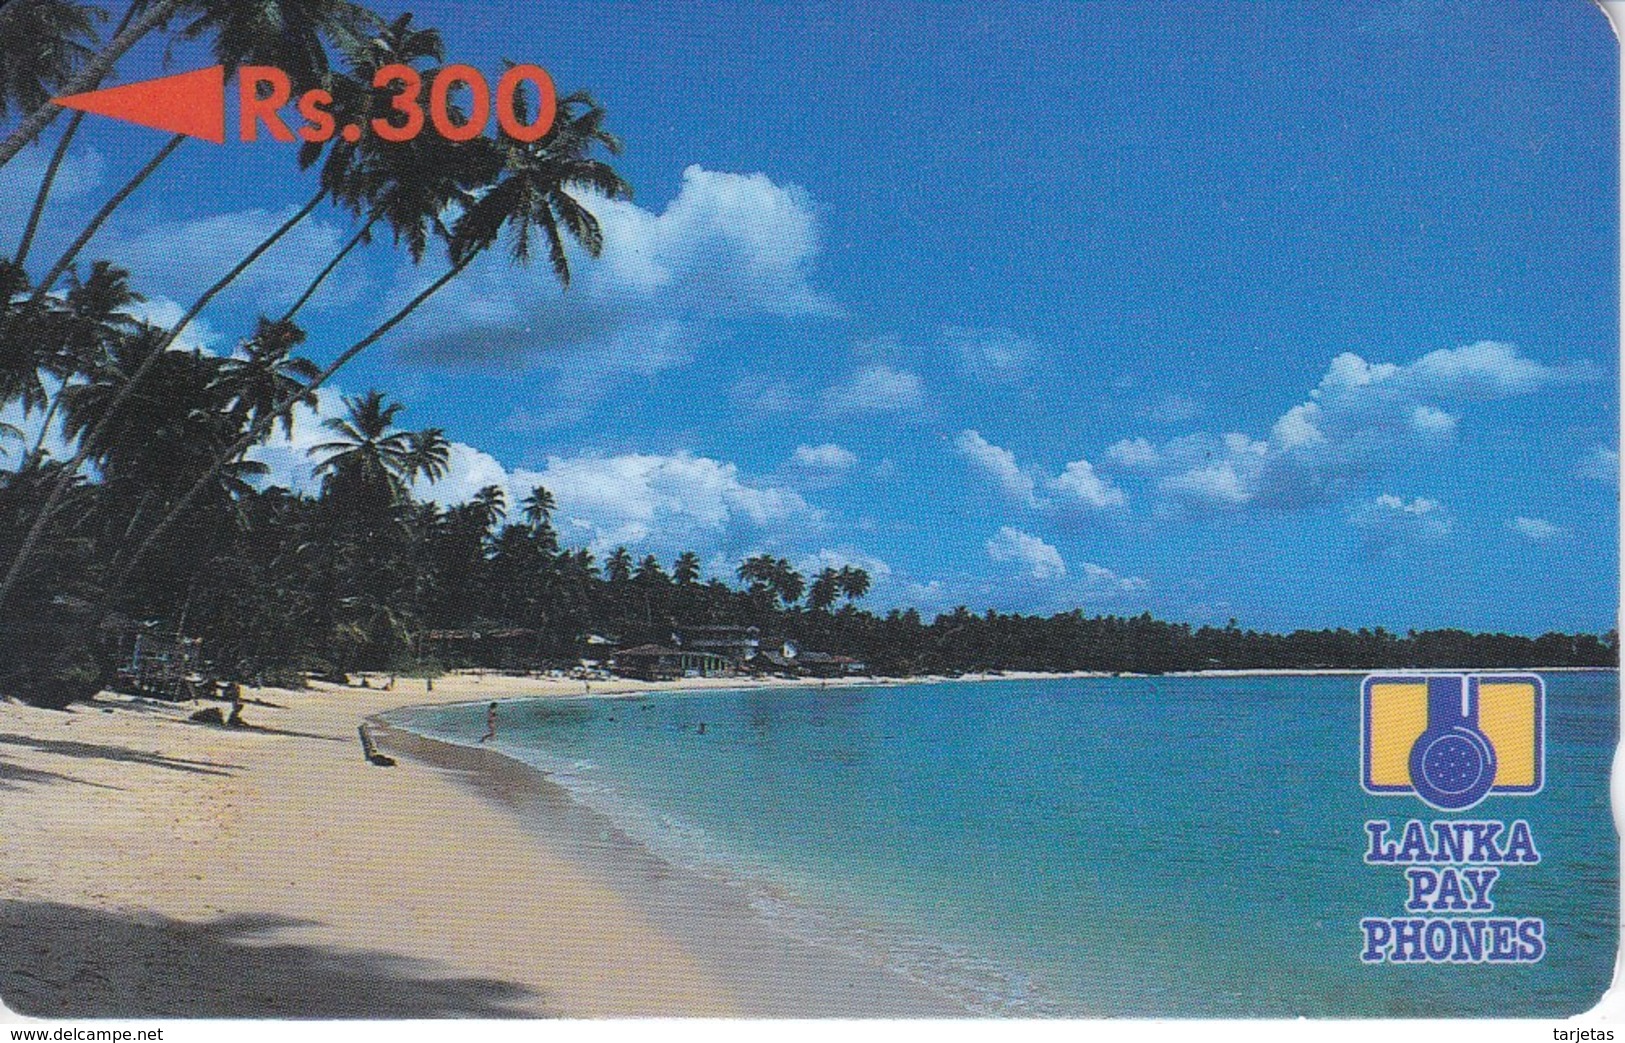 TARJETA DE SRY LANKA DE Rs.300 DE UNA PLAYA (5SRLB) - Sri Lanka (Ceylon)